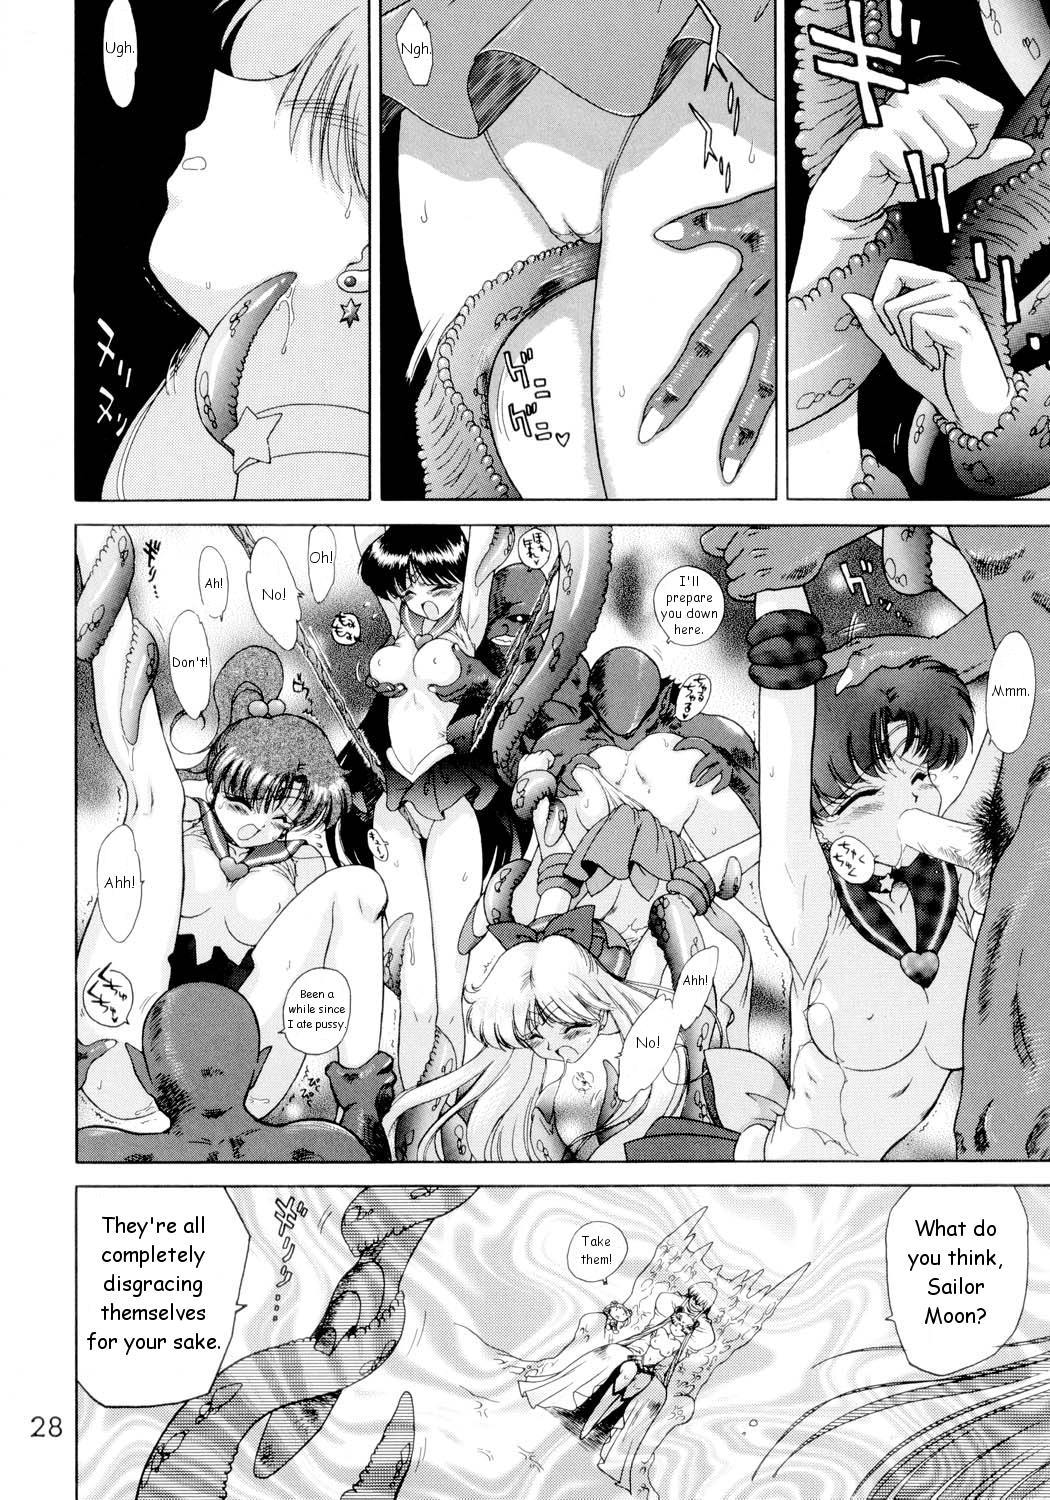 Submission Sailorstars sailor moon 26 hentai manga